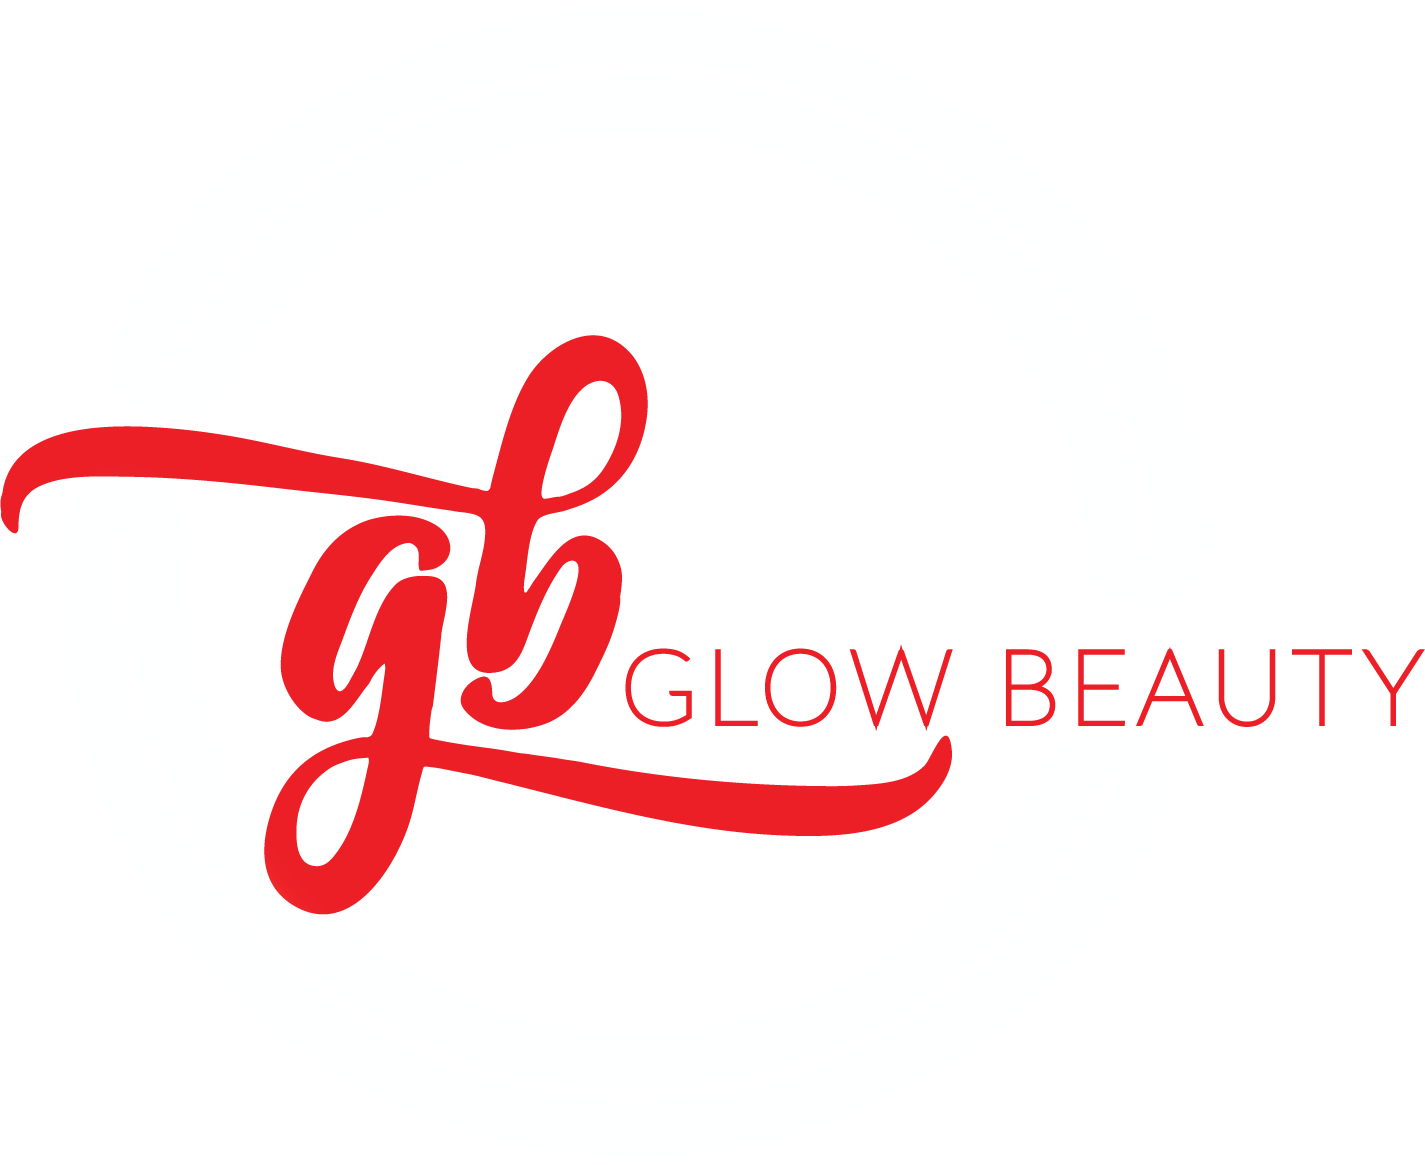 Glow Beauty by Jennifer